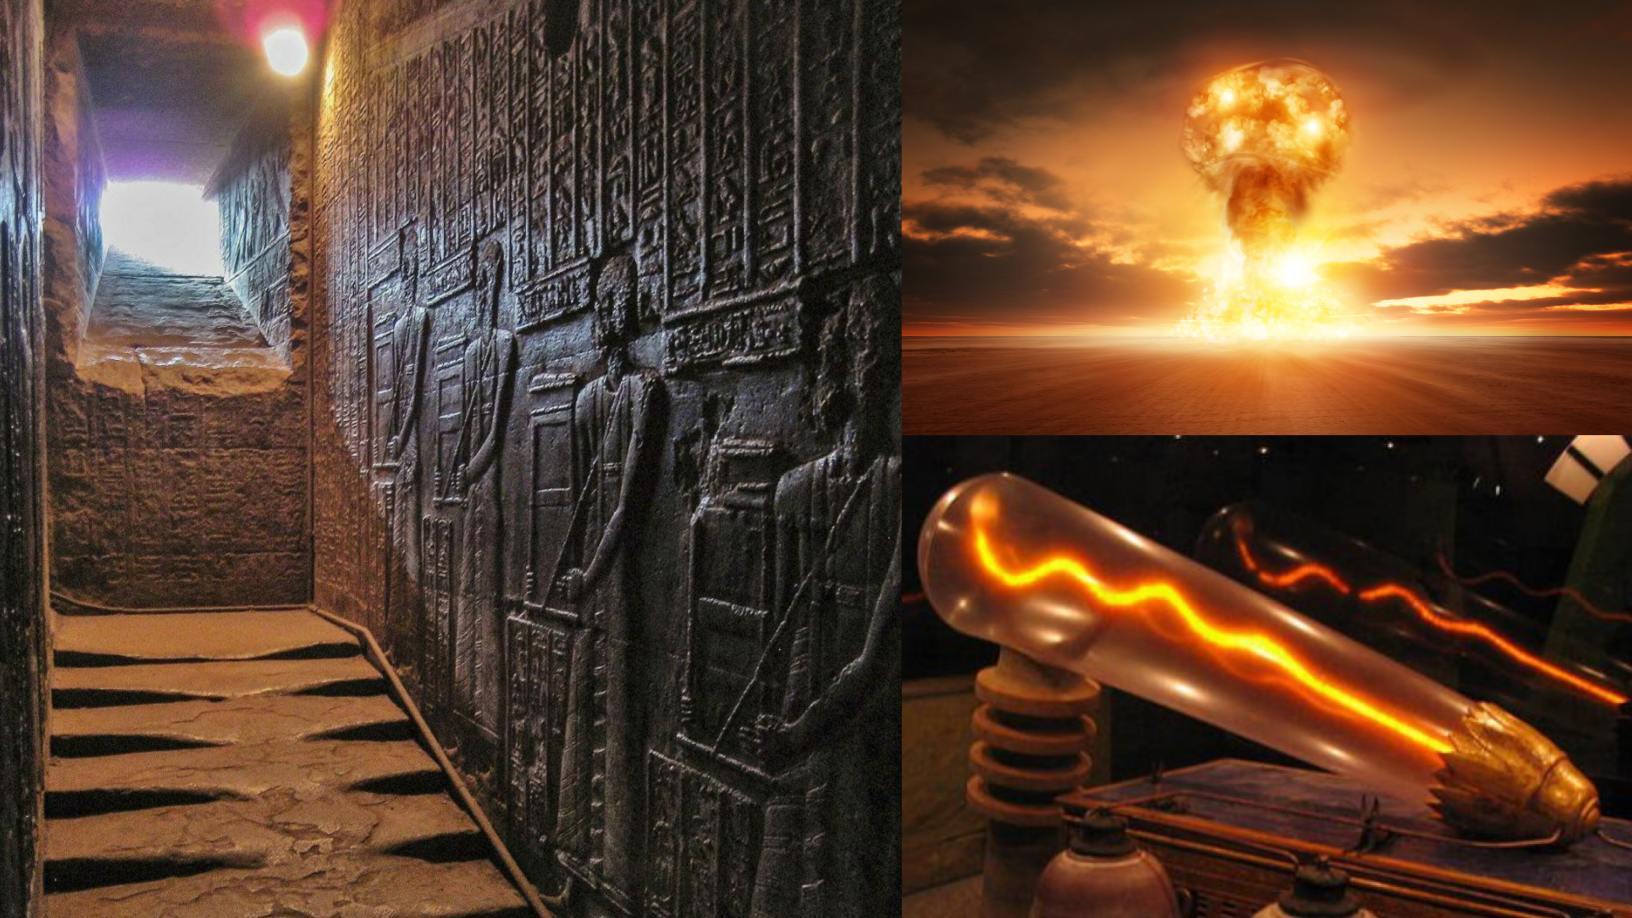 Escadas derretidas no Templo de Hathor: O que teria acontecido no passado? 1